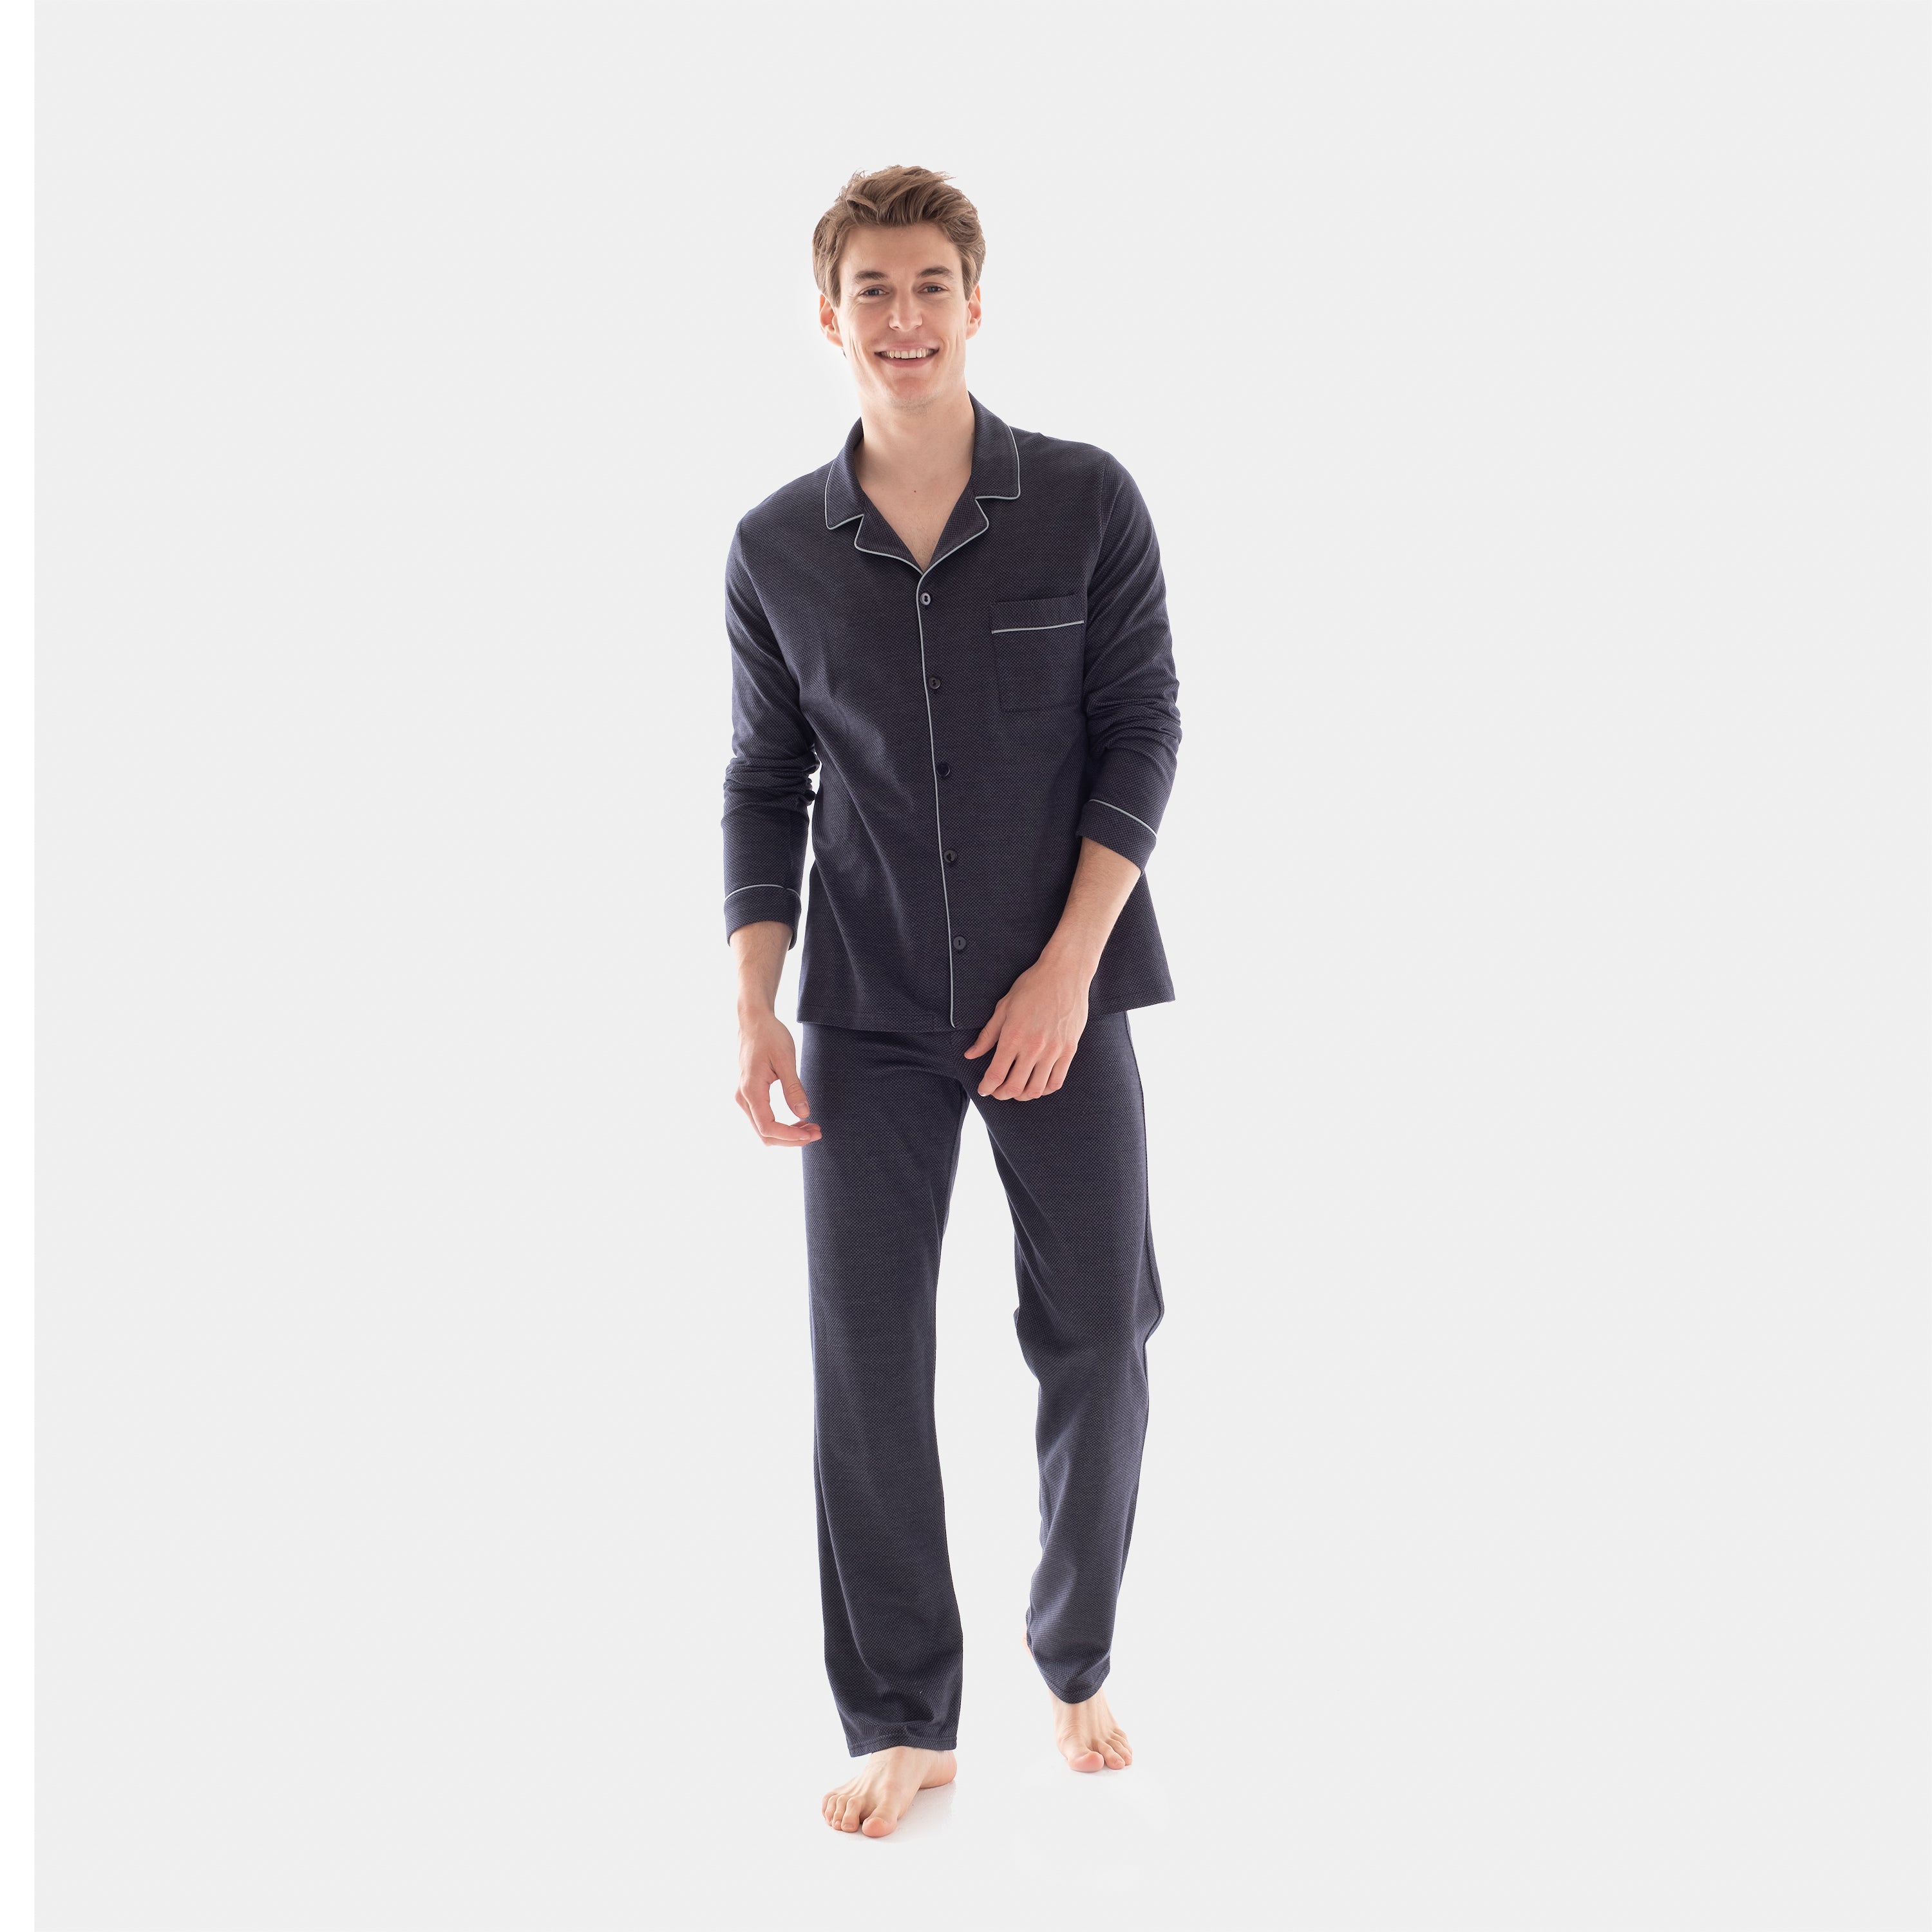 Jacquard Knit Pajama Set